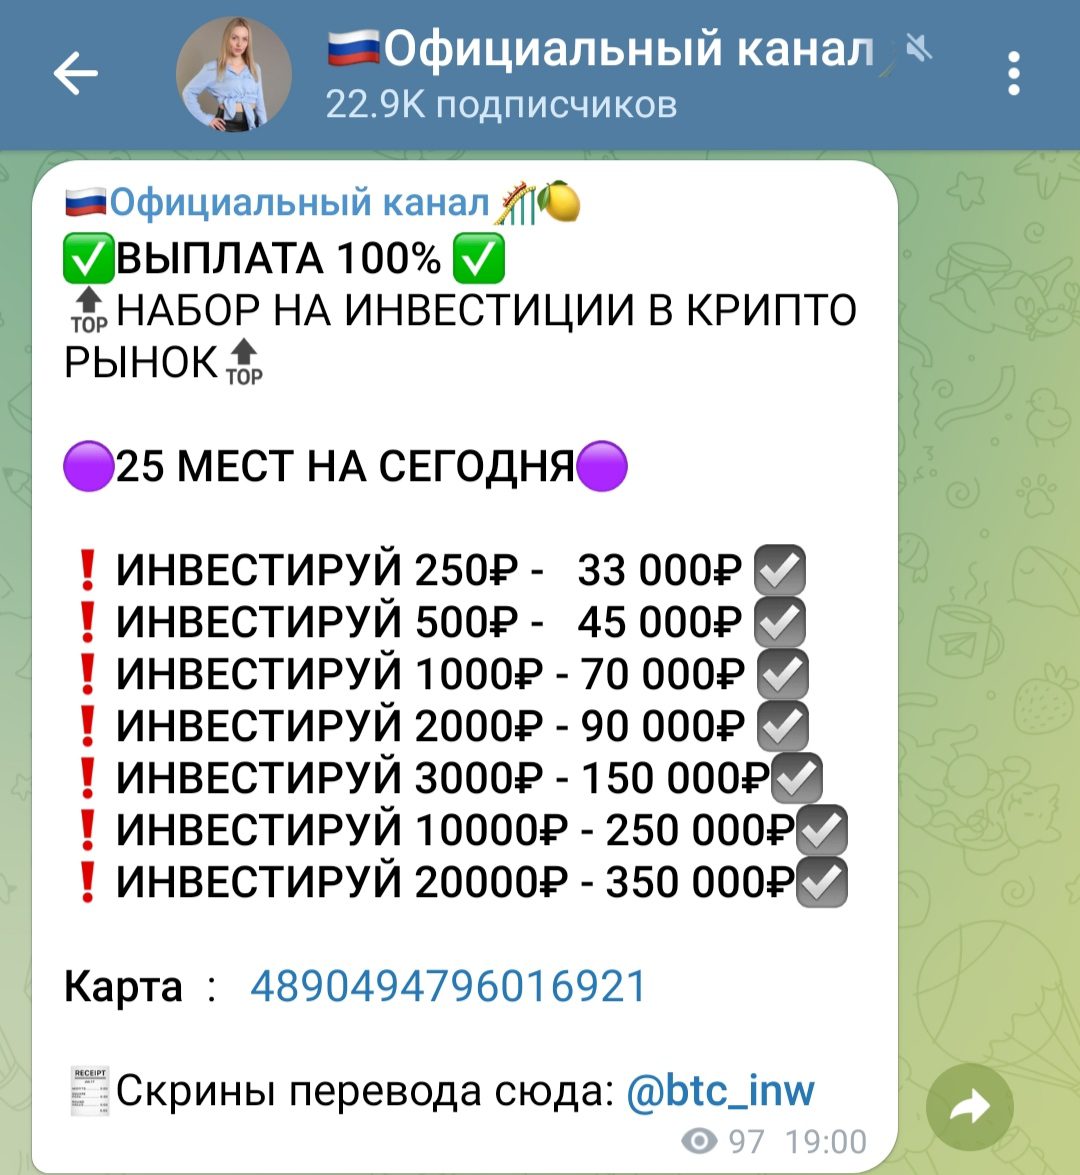 Btc inw телеграмм